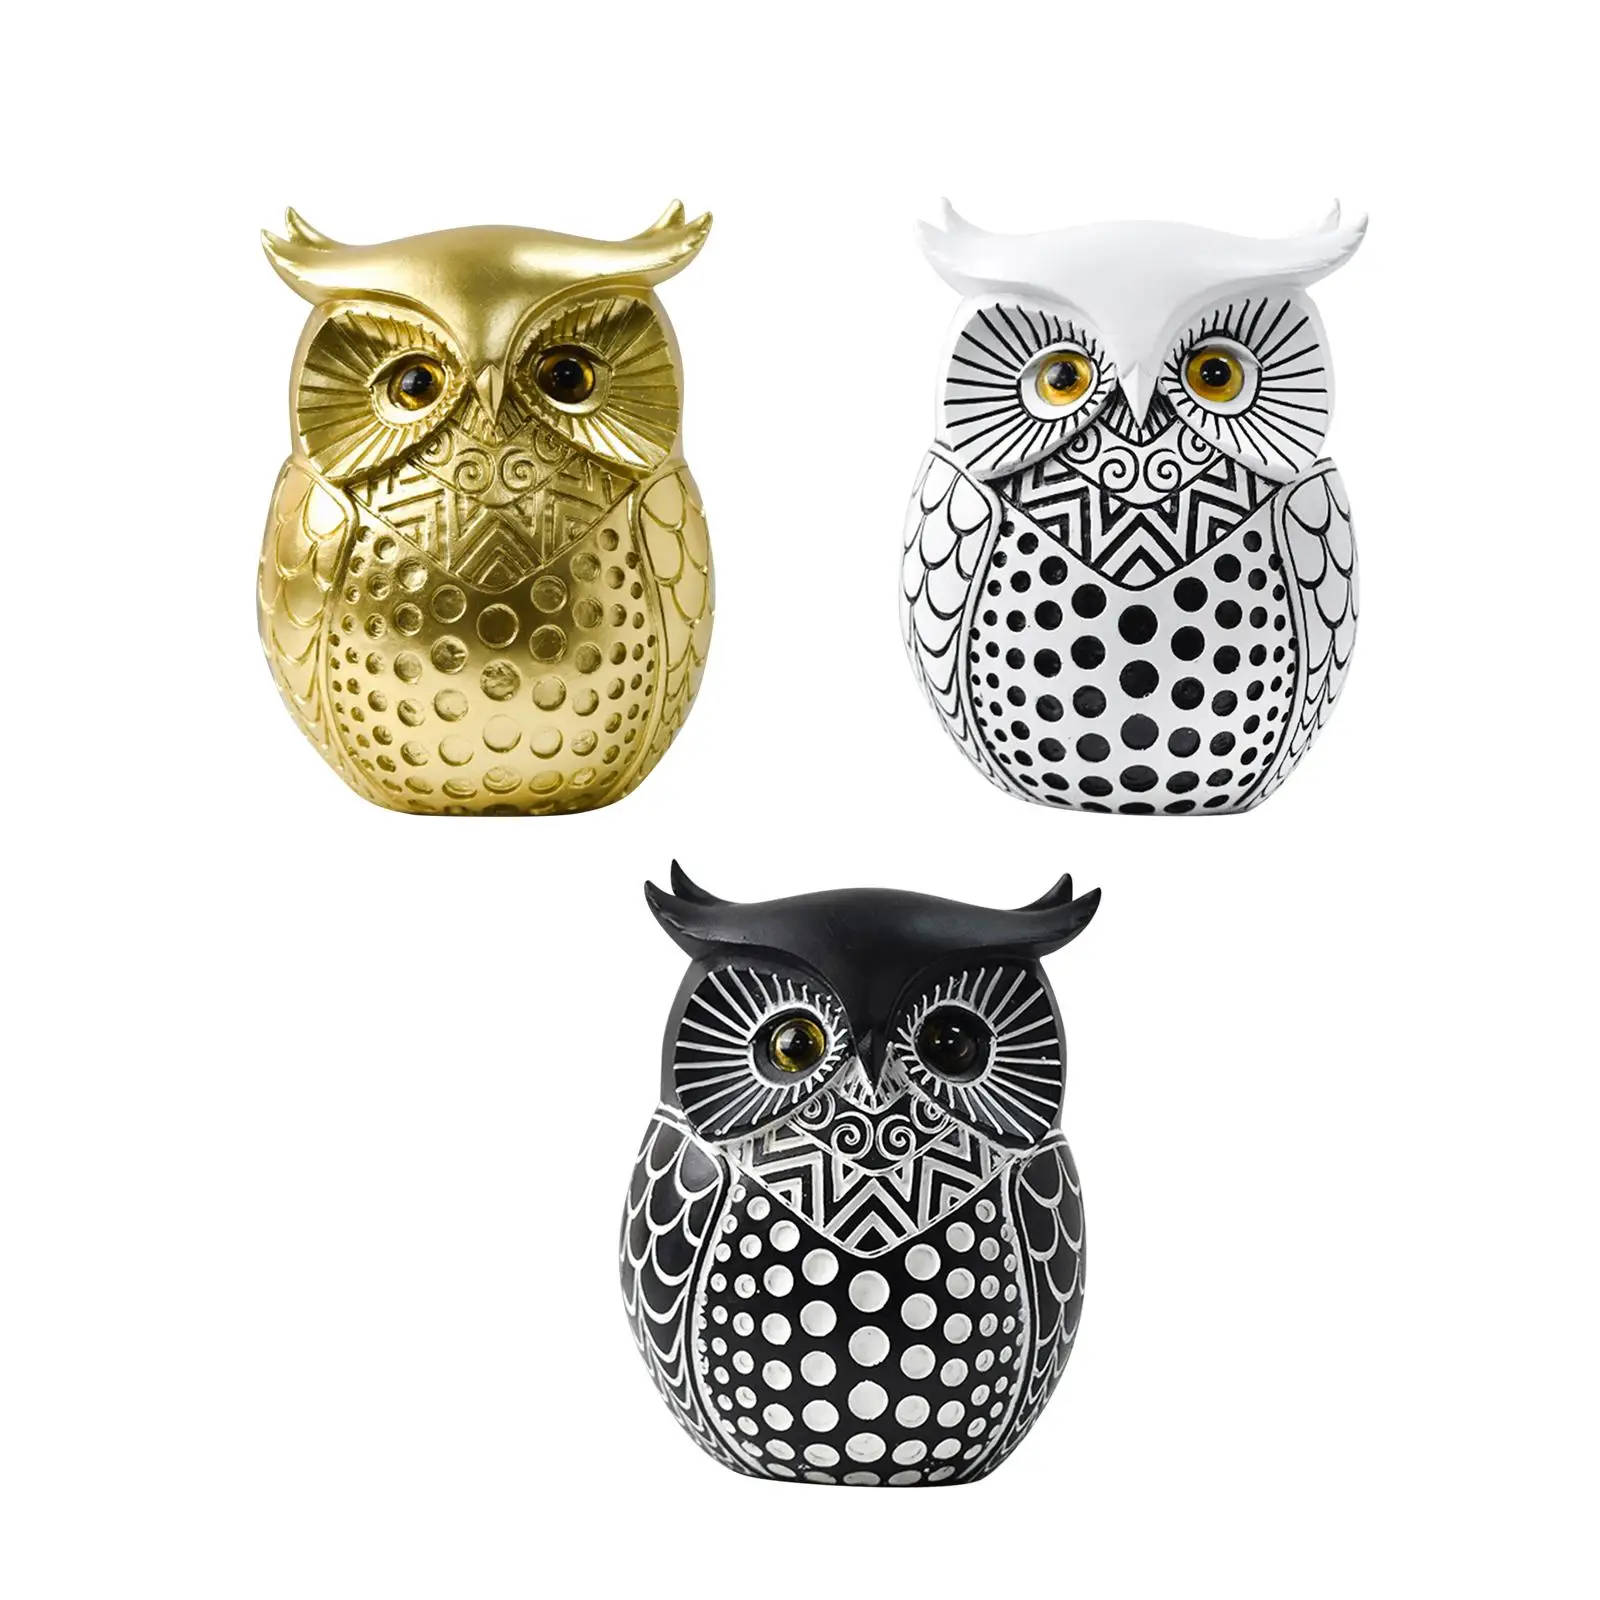 Owl Statue Home Decor Simple Owl Figurine for Office Mantel Desktop